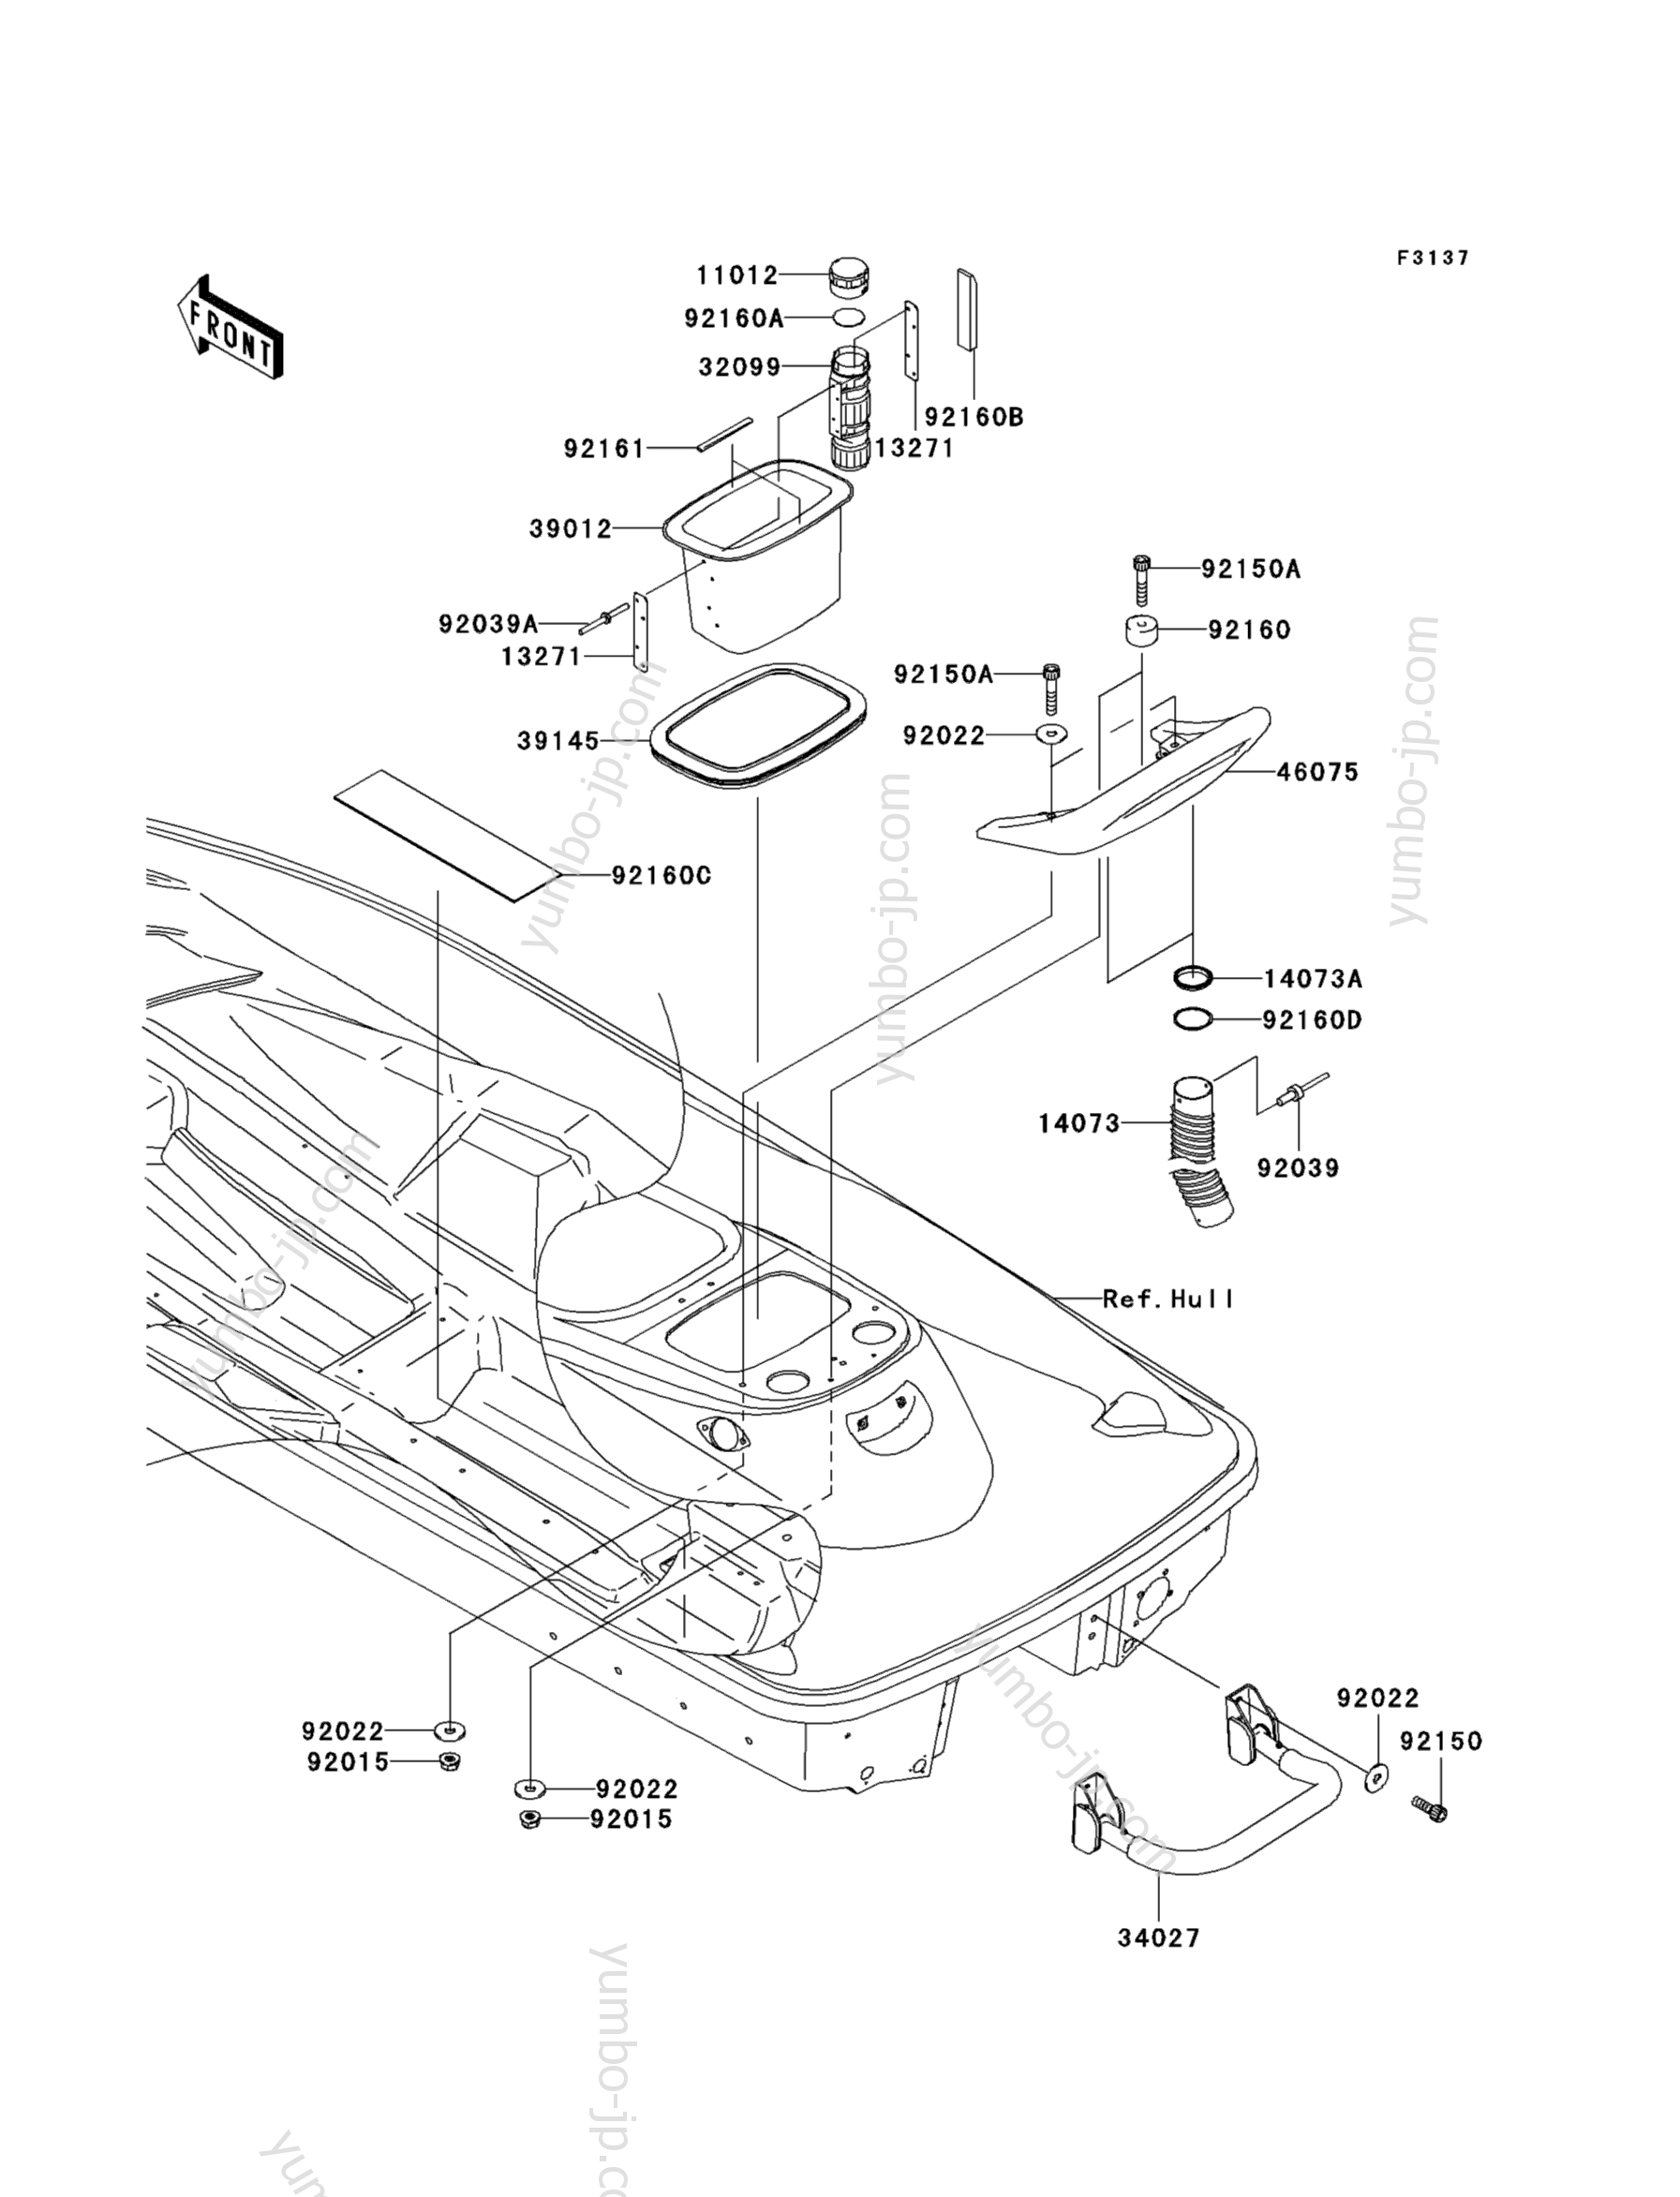 Hull Rear Fittings для гидроциклов KAWASAKI JET SKI 1100 STX D.I. (JT1100-G1) 2003 г.